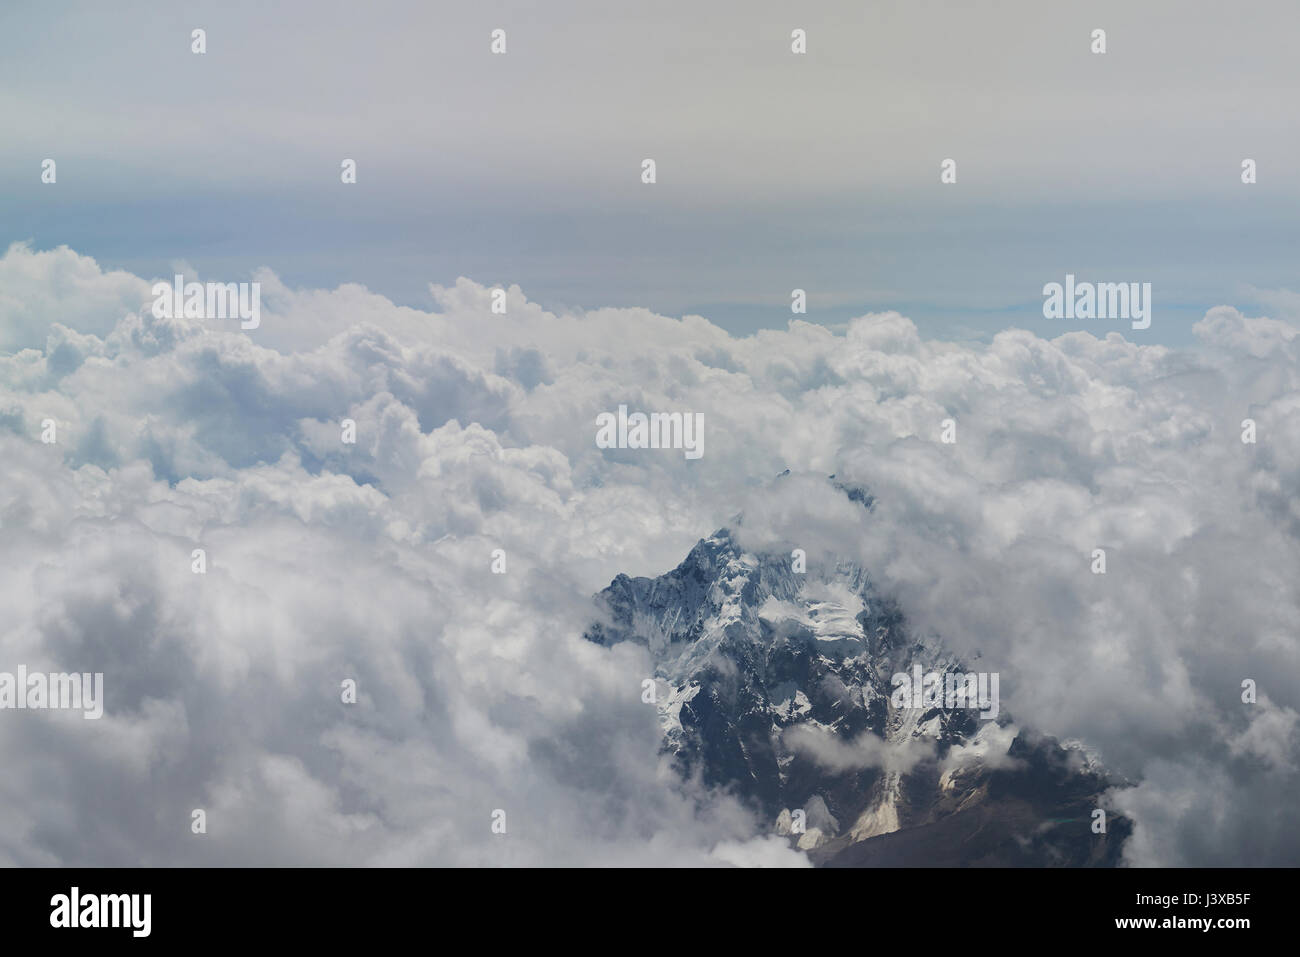 Verschneite Berggipfel rund um weiße Wolken Luftbild Stockfoto